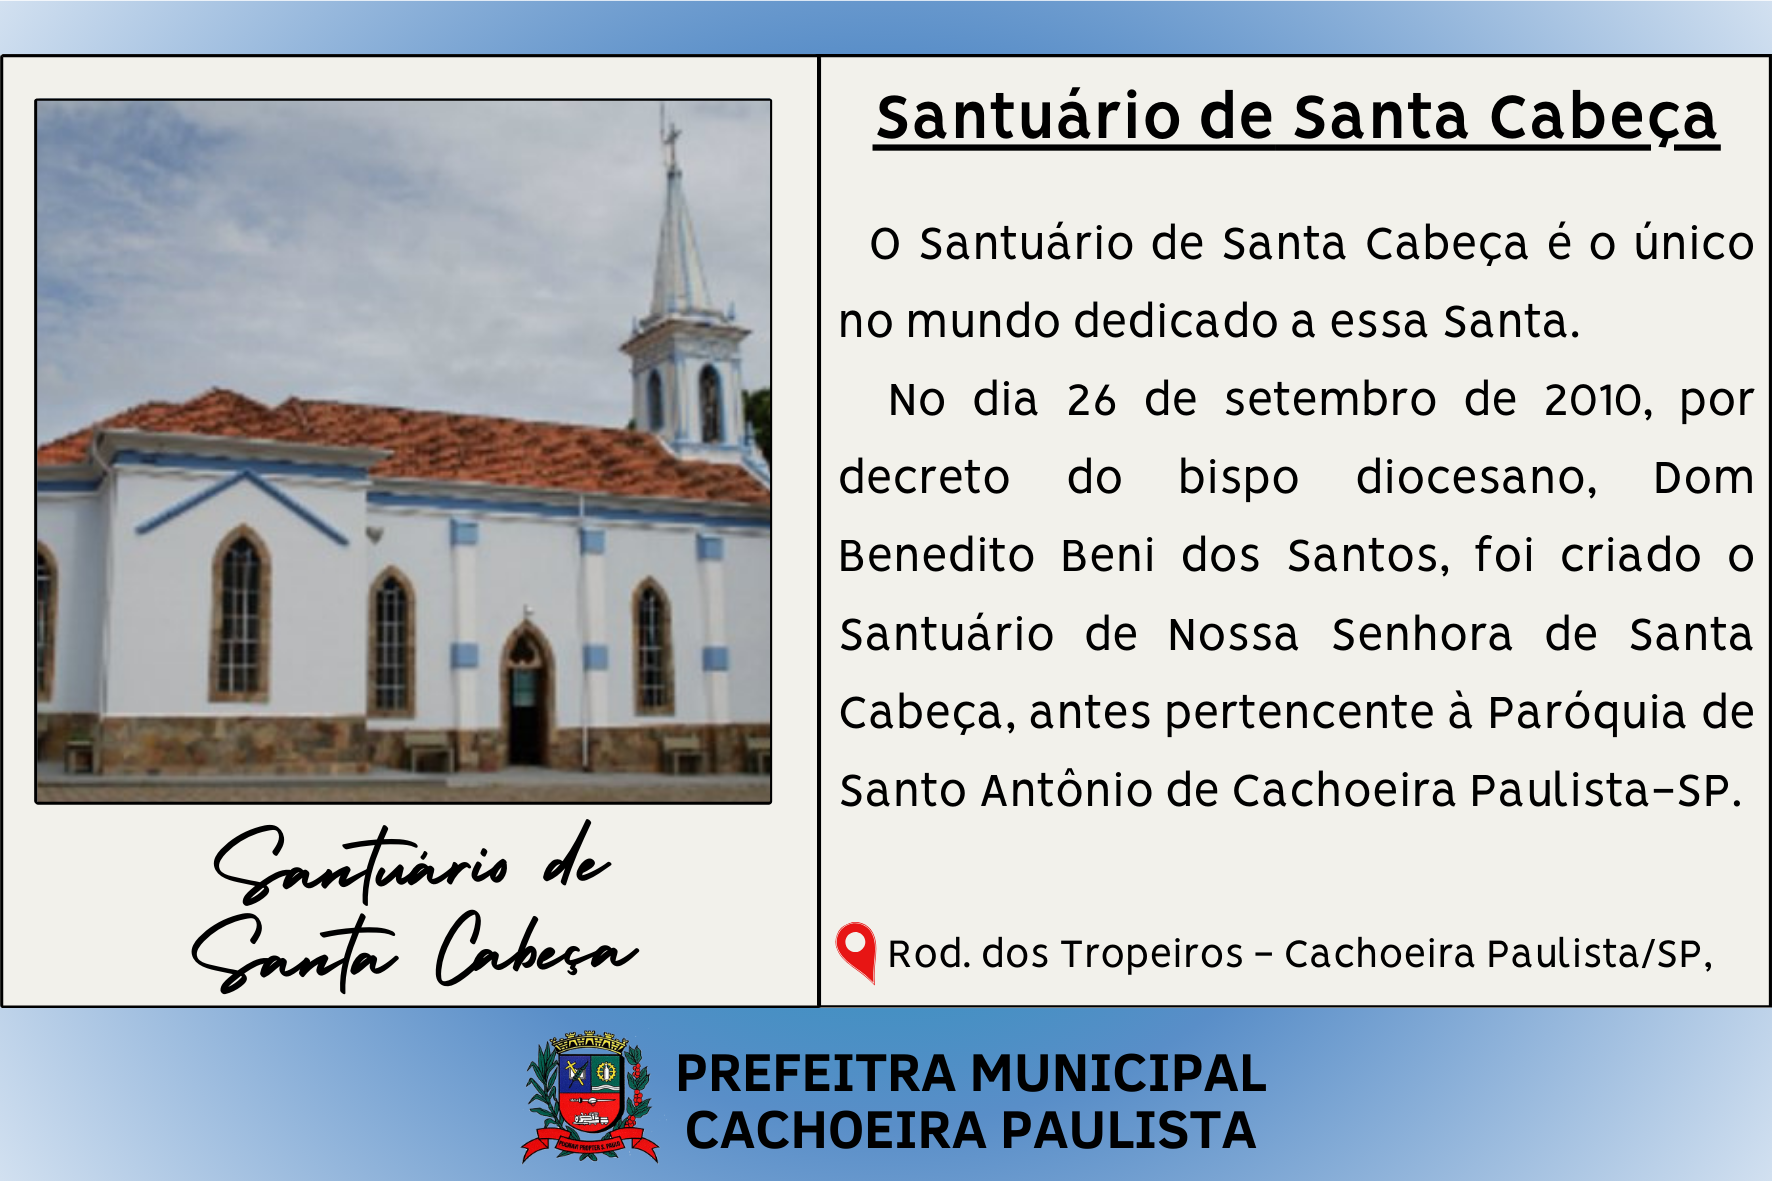 Santuário de Santa Cabeça